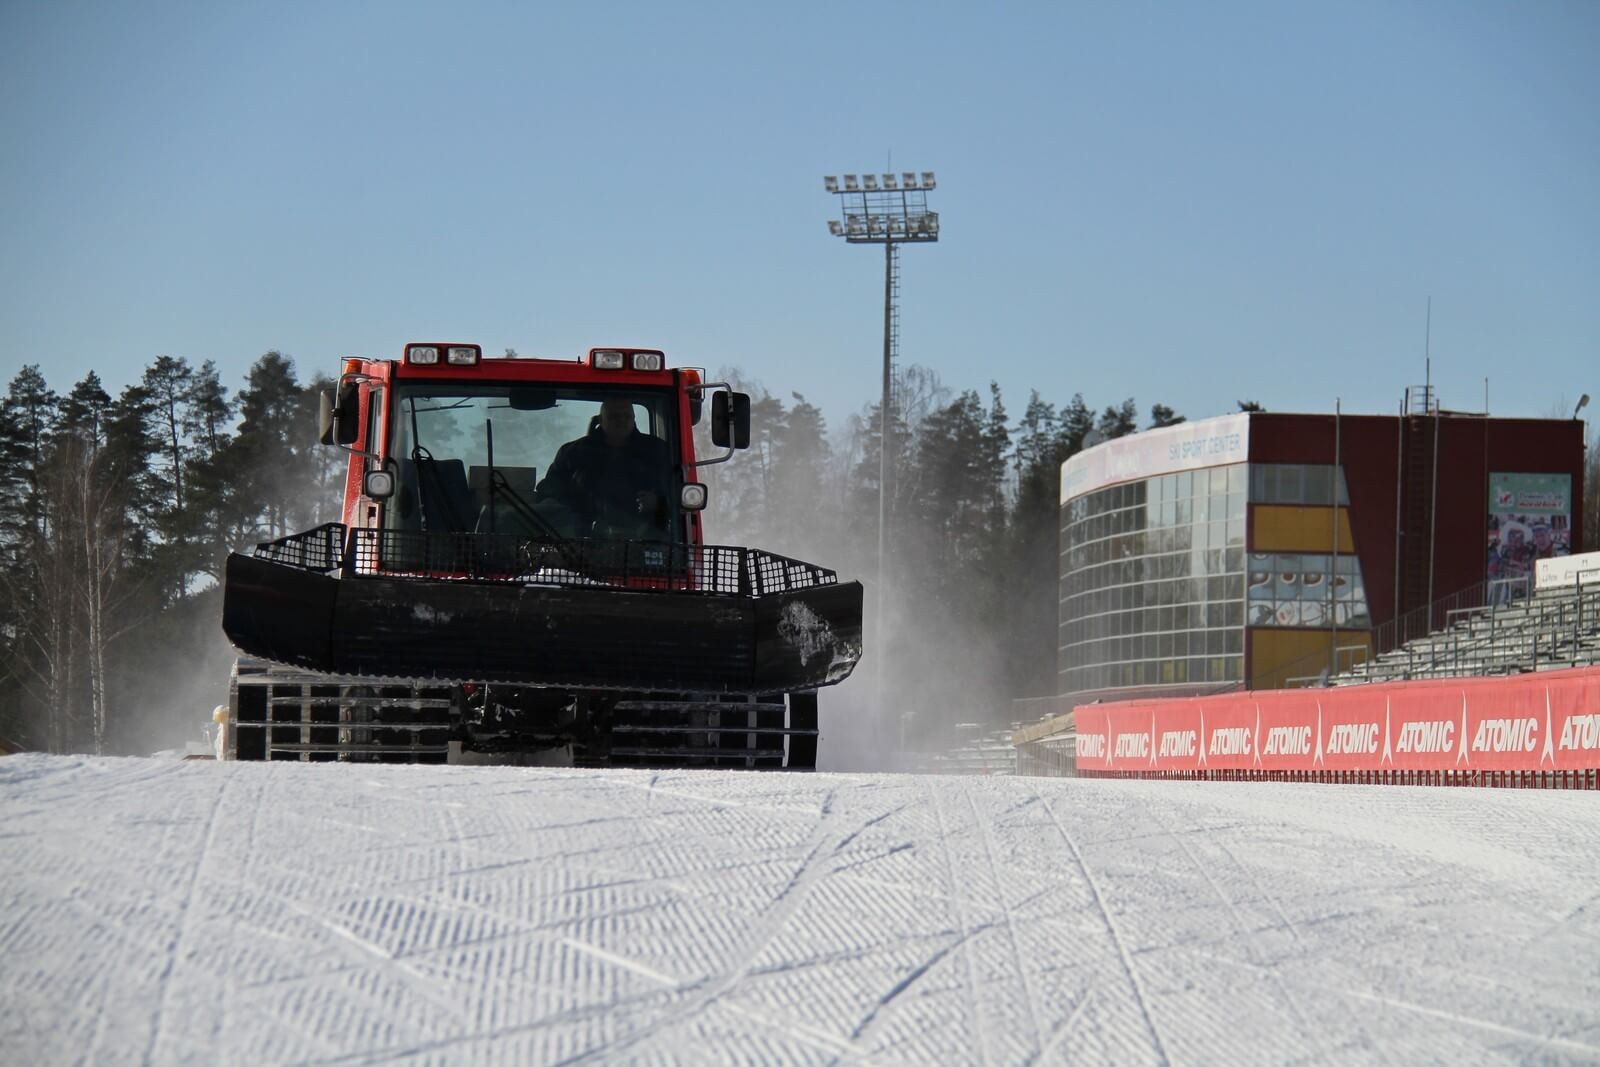 Фото спорт центра - Демино готово к проведению Деминского лыжного марафона 2018